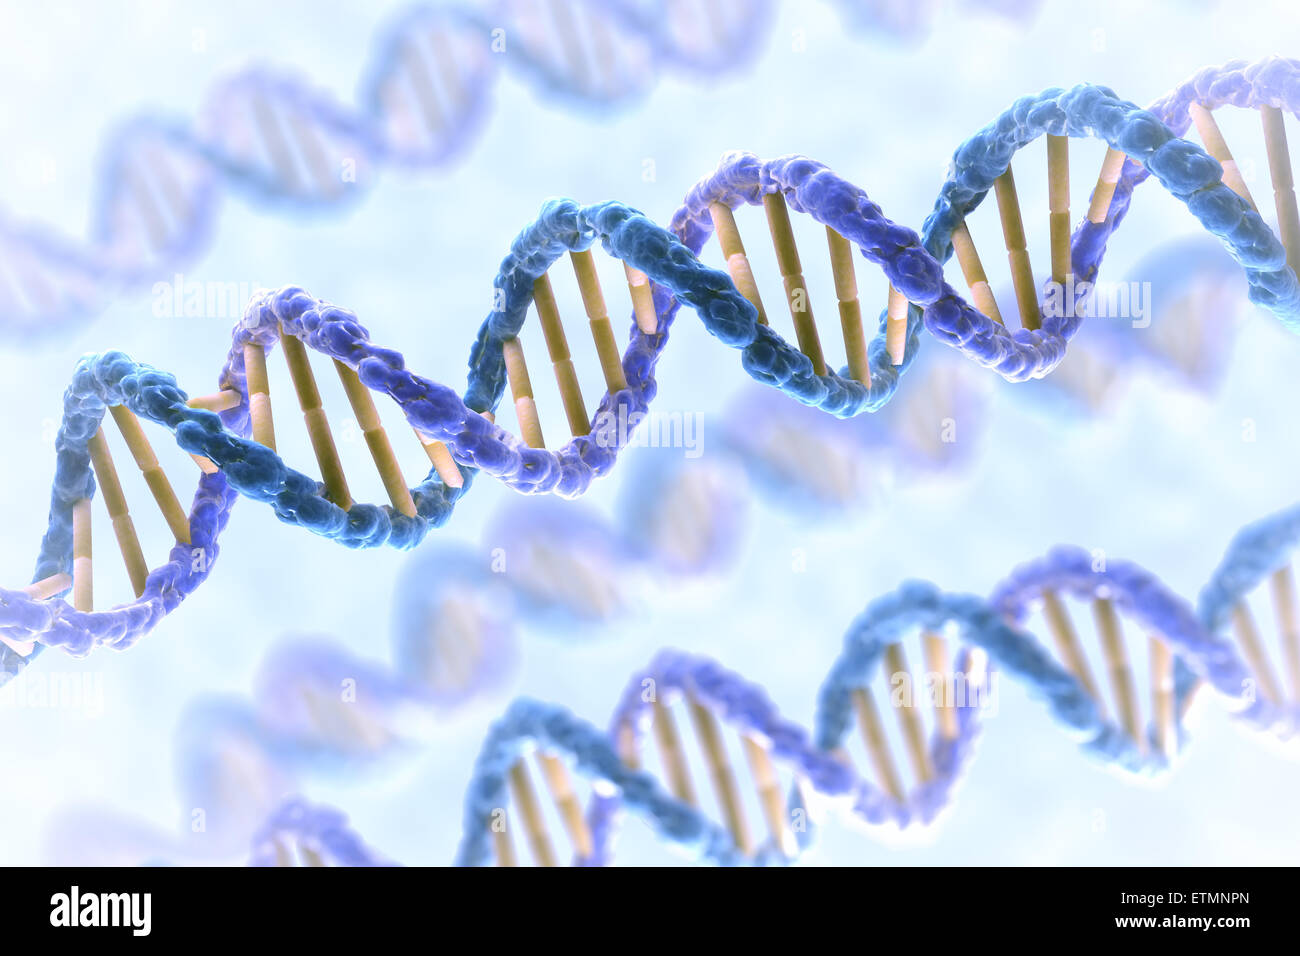 Illustration stylisée de brins de l'ADN humain, l'acide désoxyribonucléique. Banque D'Images